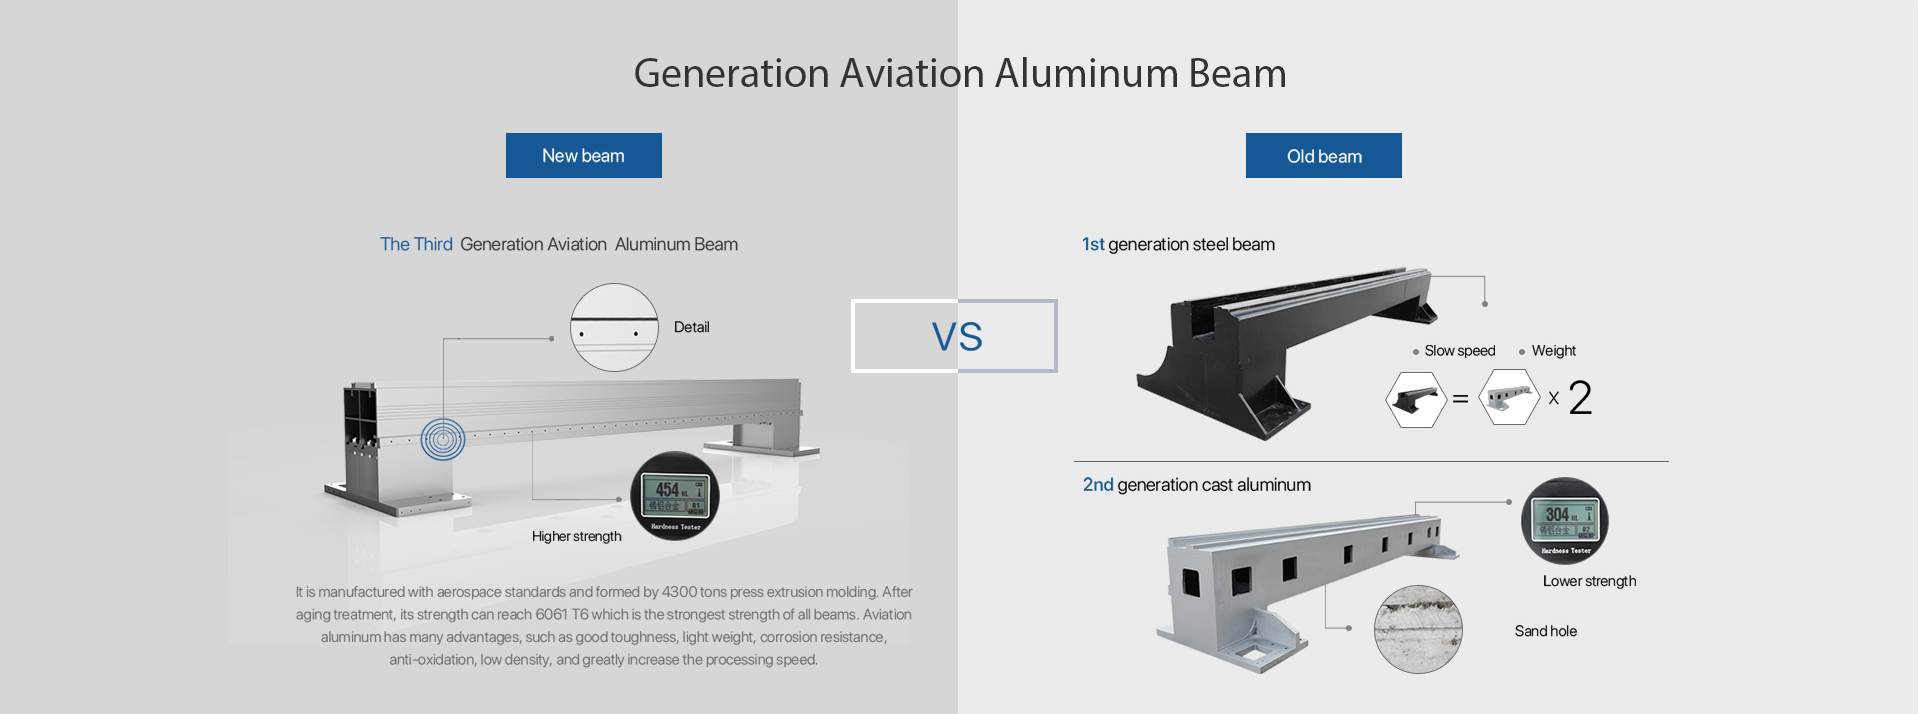 Generation Aviation Aluminum Beam